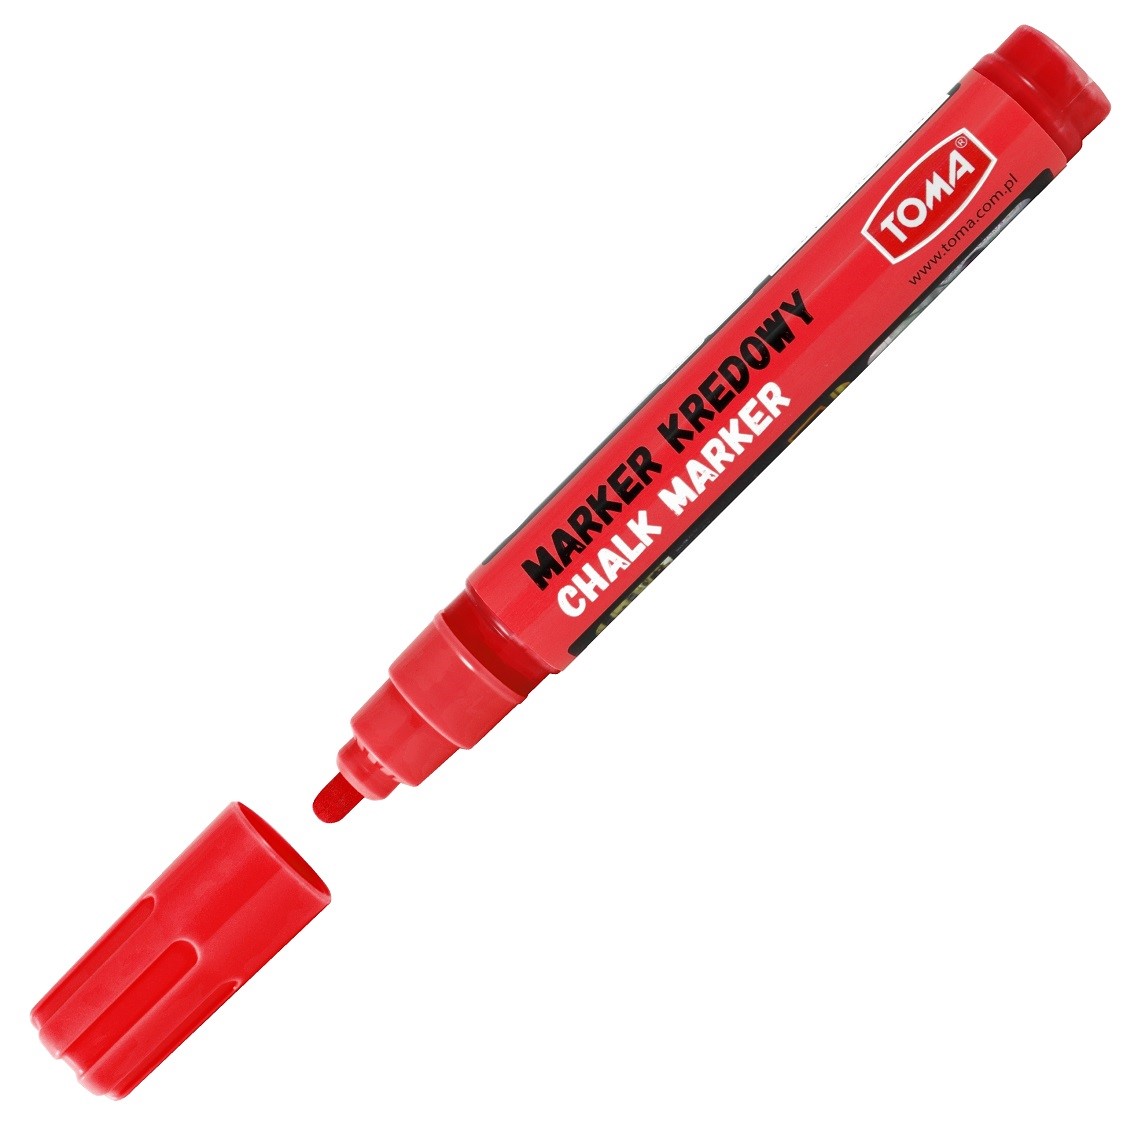 toma-marker kredowy okrągły czerwony    to-292 4.5mm 8g /10/